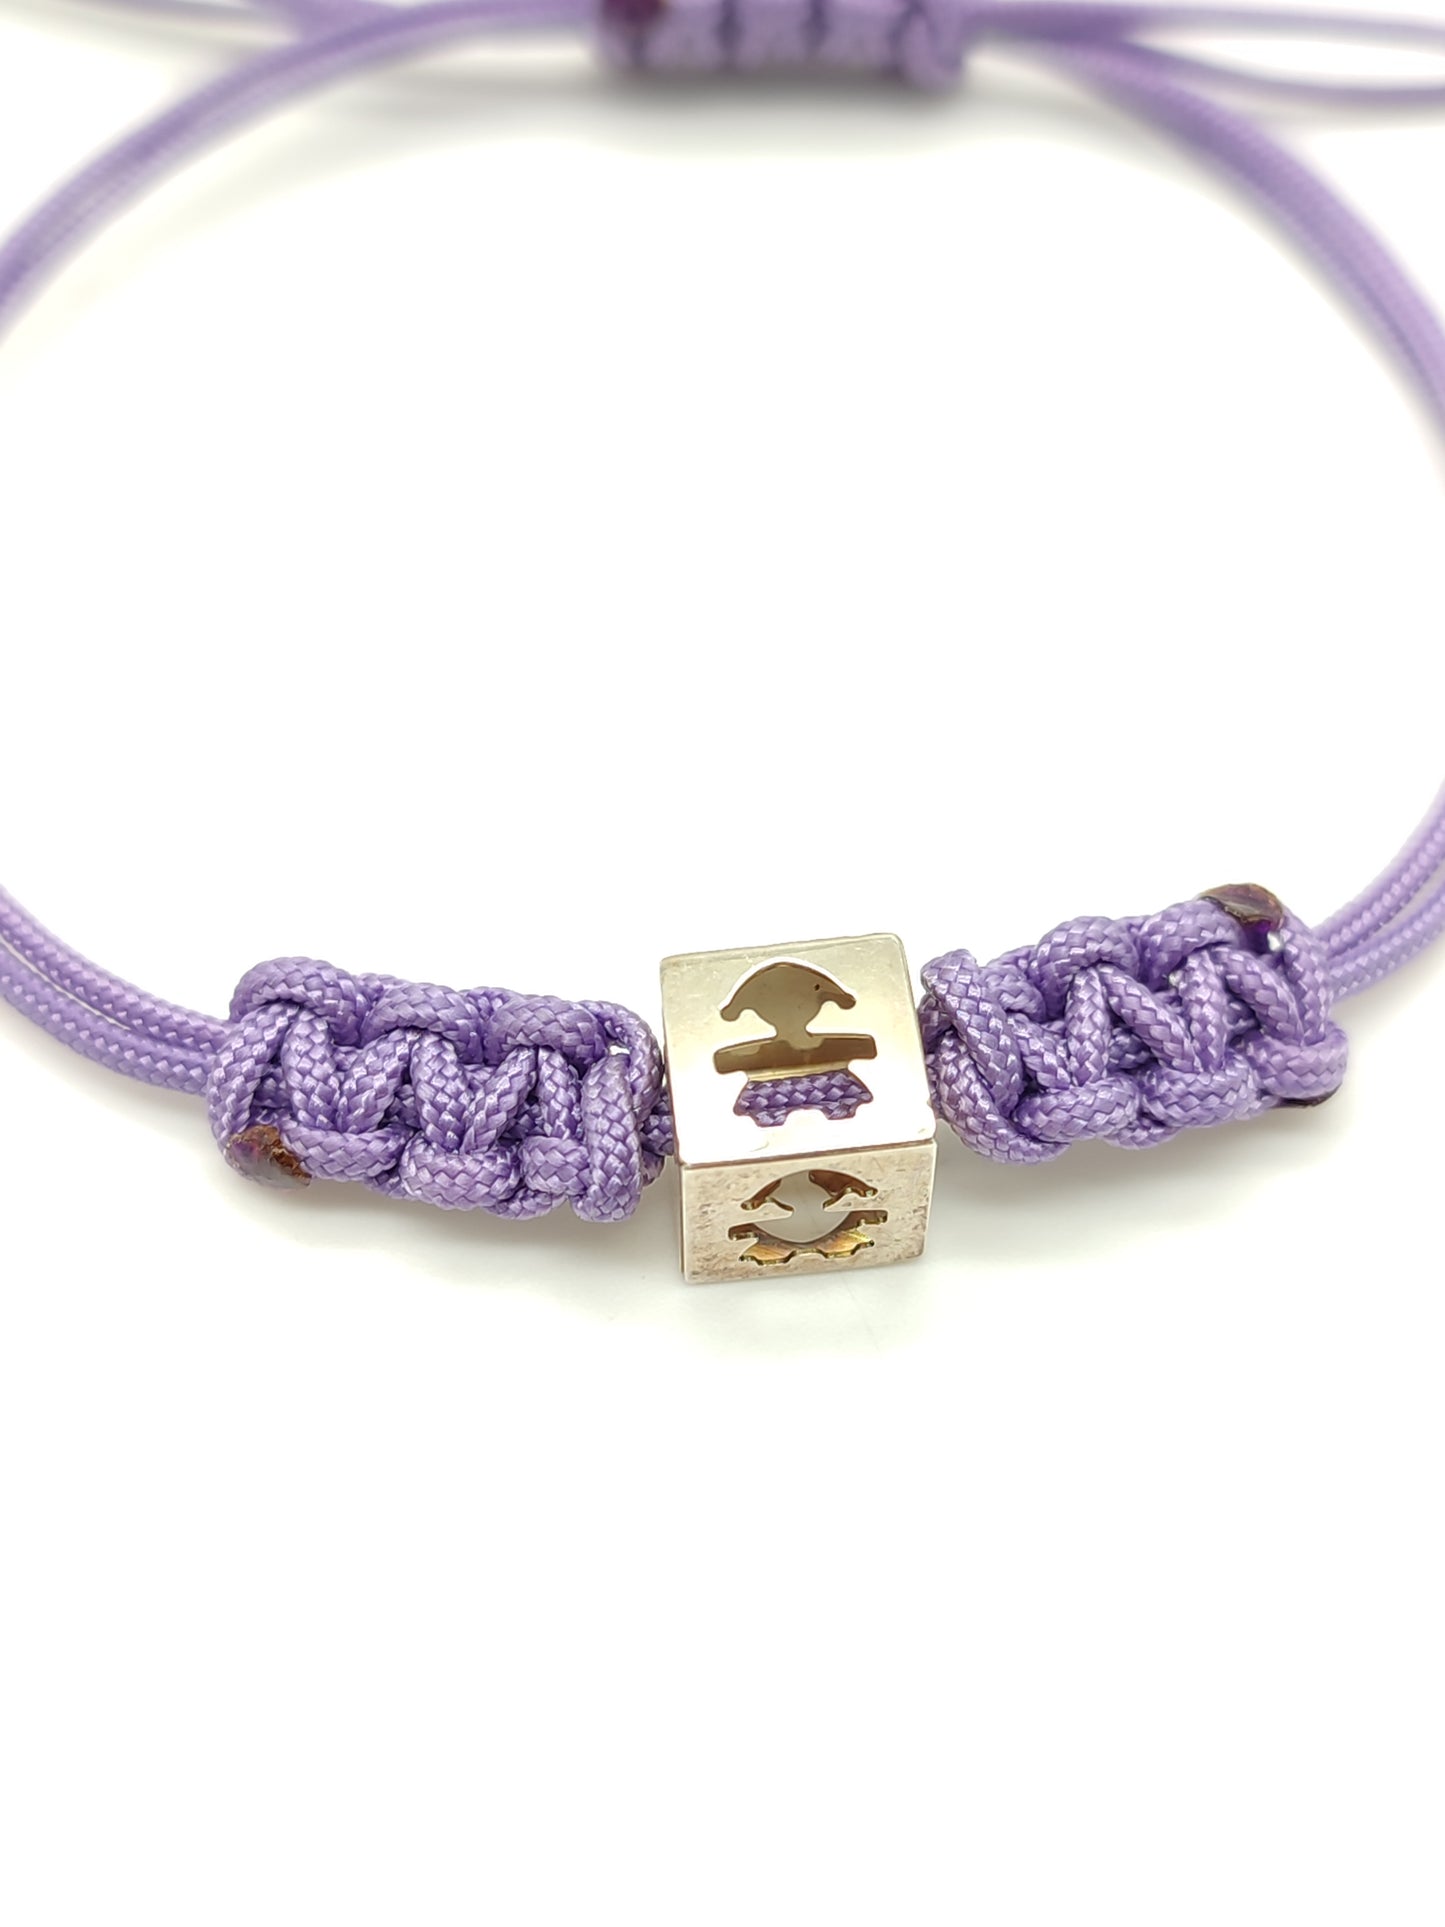 Lebebé purple rope silver bracelet